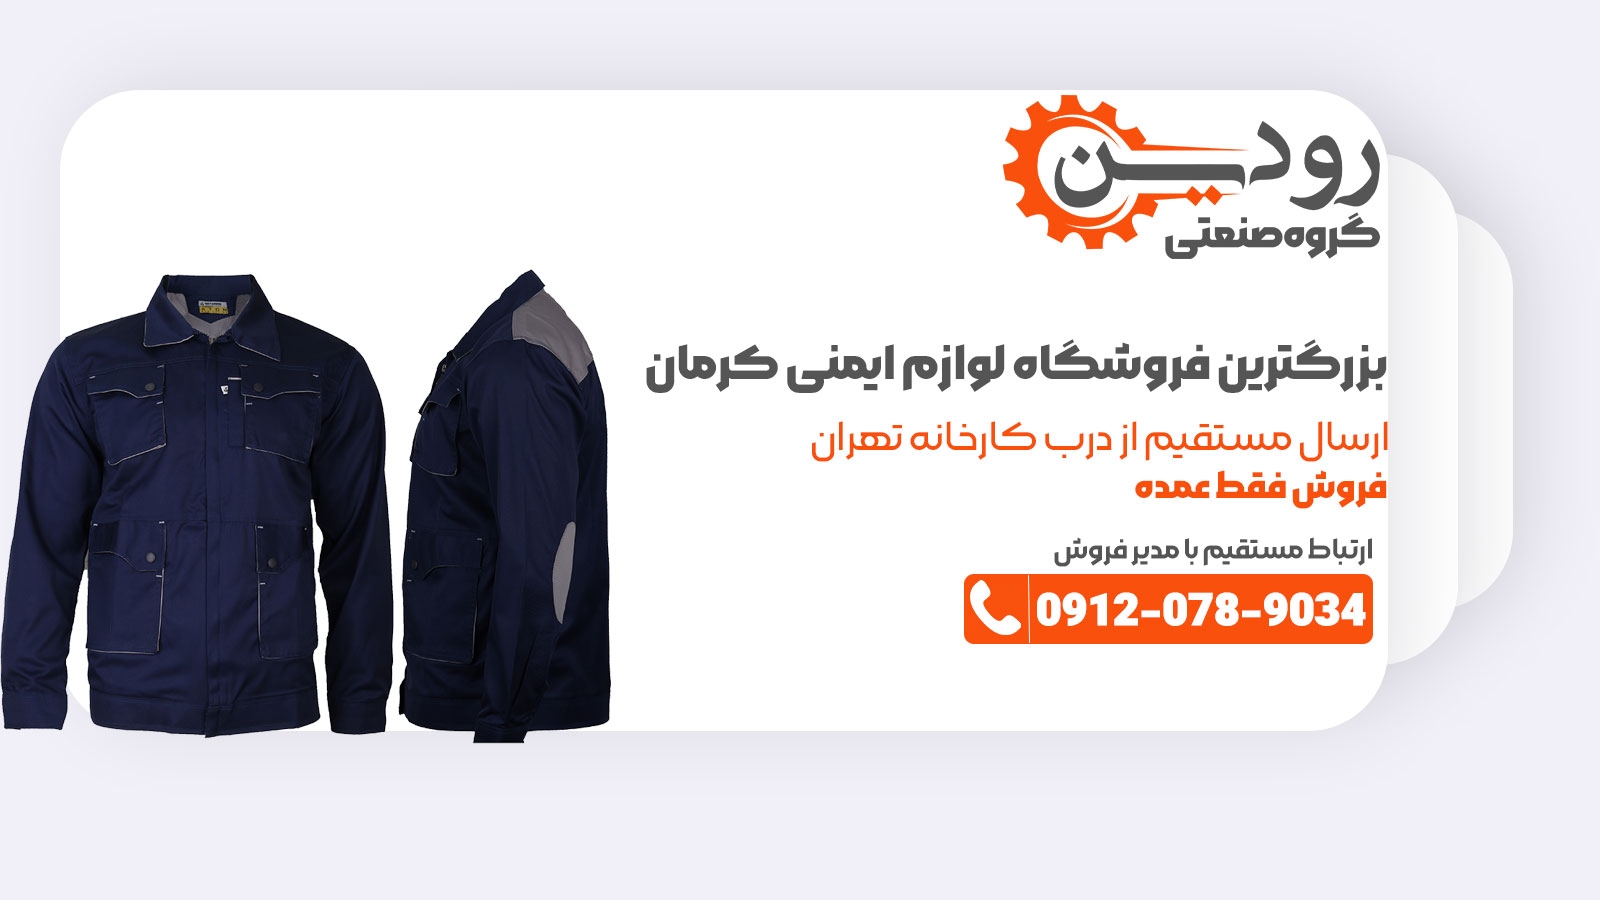 تولیدی لباس کار در کرمان با فروشگاه تجهیزات ایمنی در کرمان قرارداد دارد.